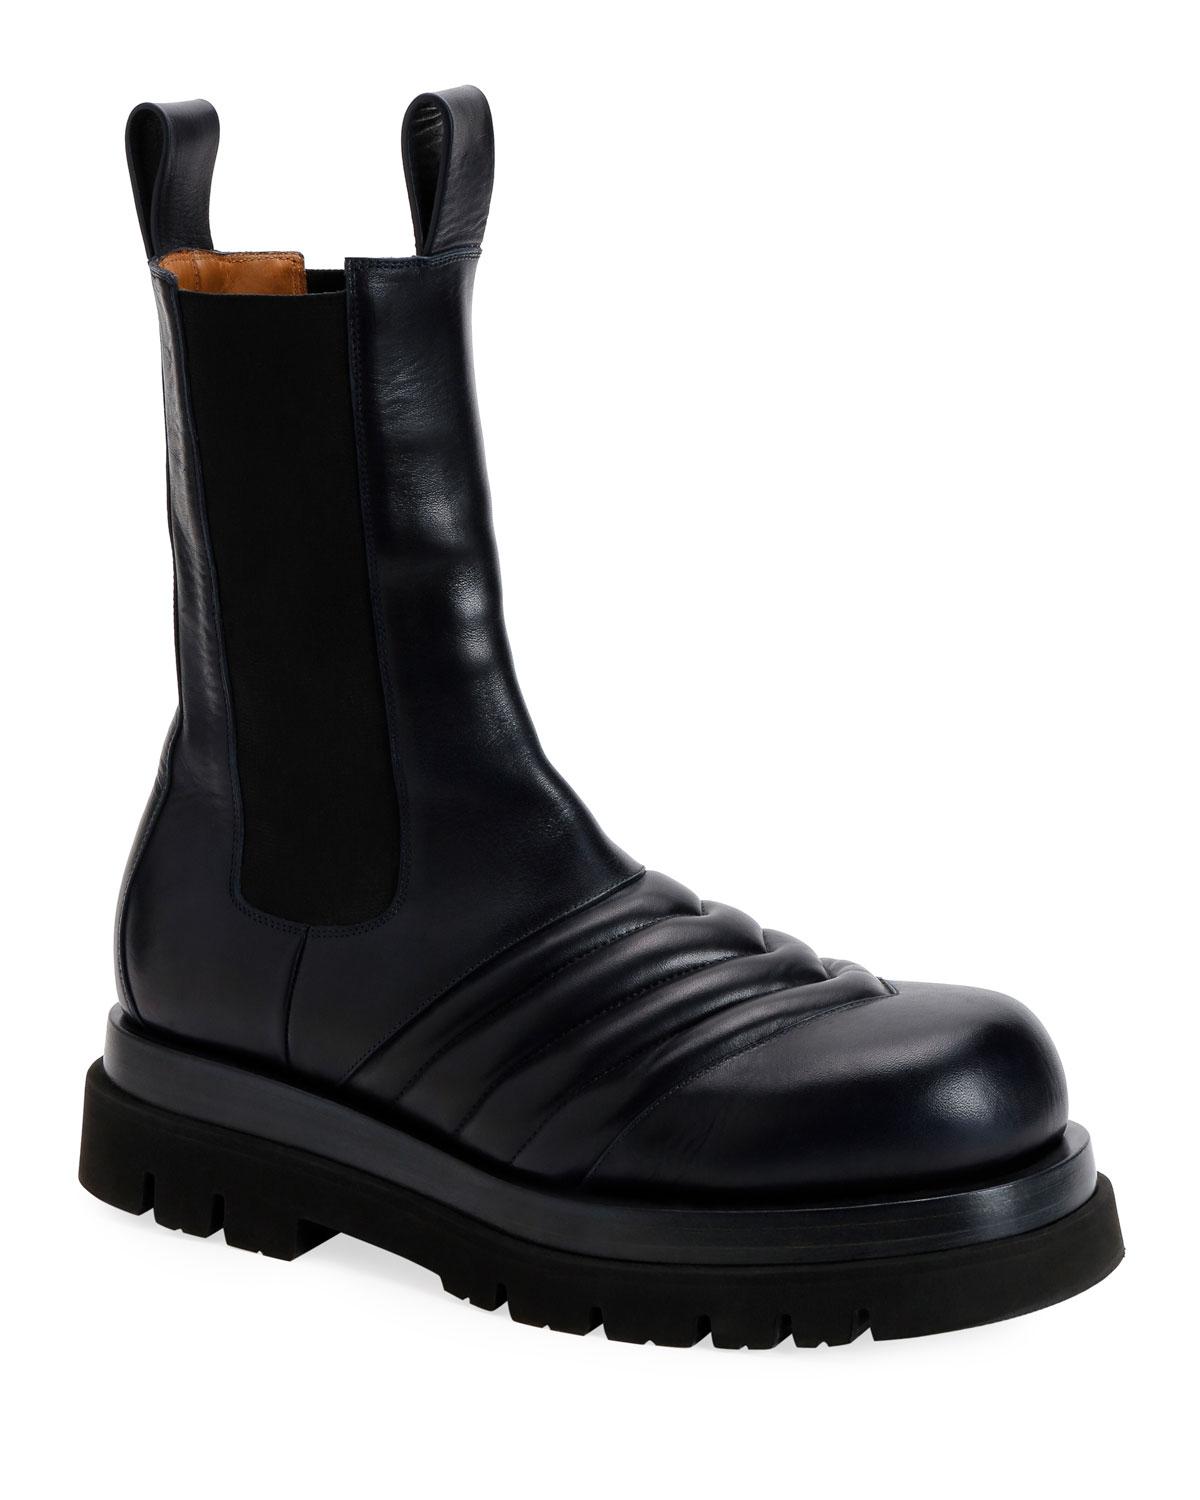 black flat combat boots